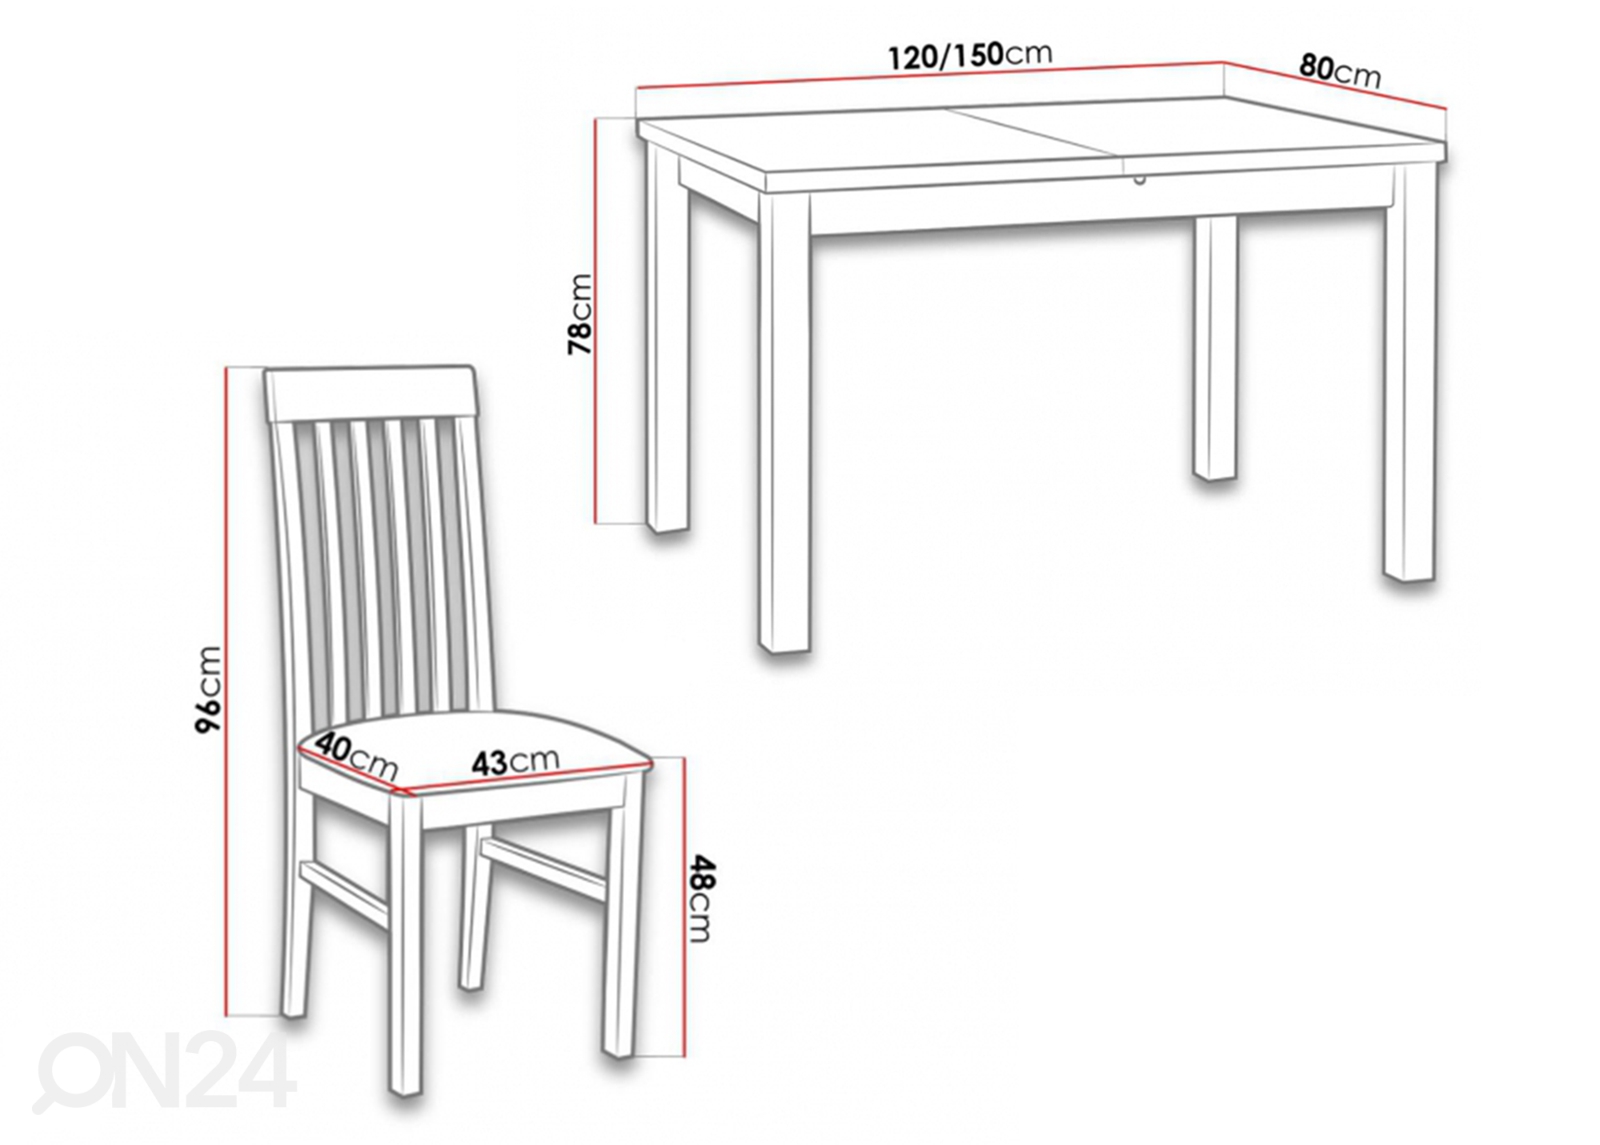 Удлиняющийся обеденный стол 80x120-150 cm + 5 стульев увеличить размеры